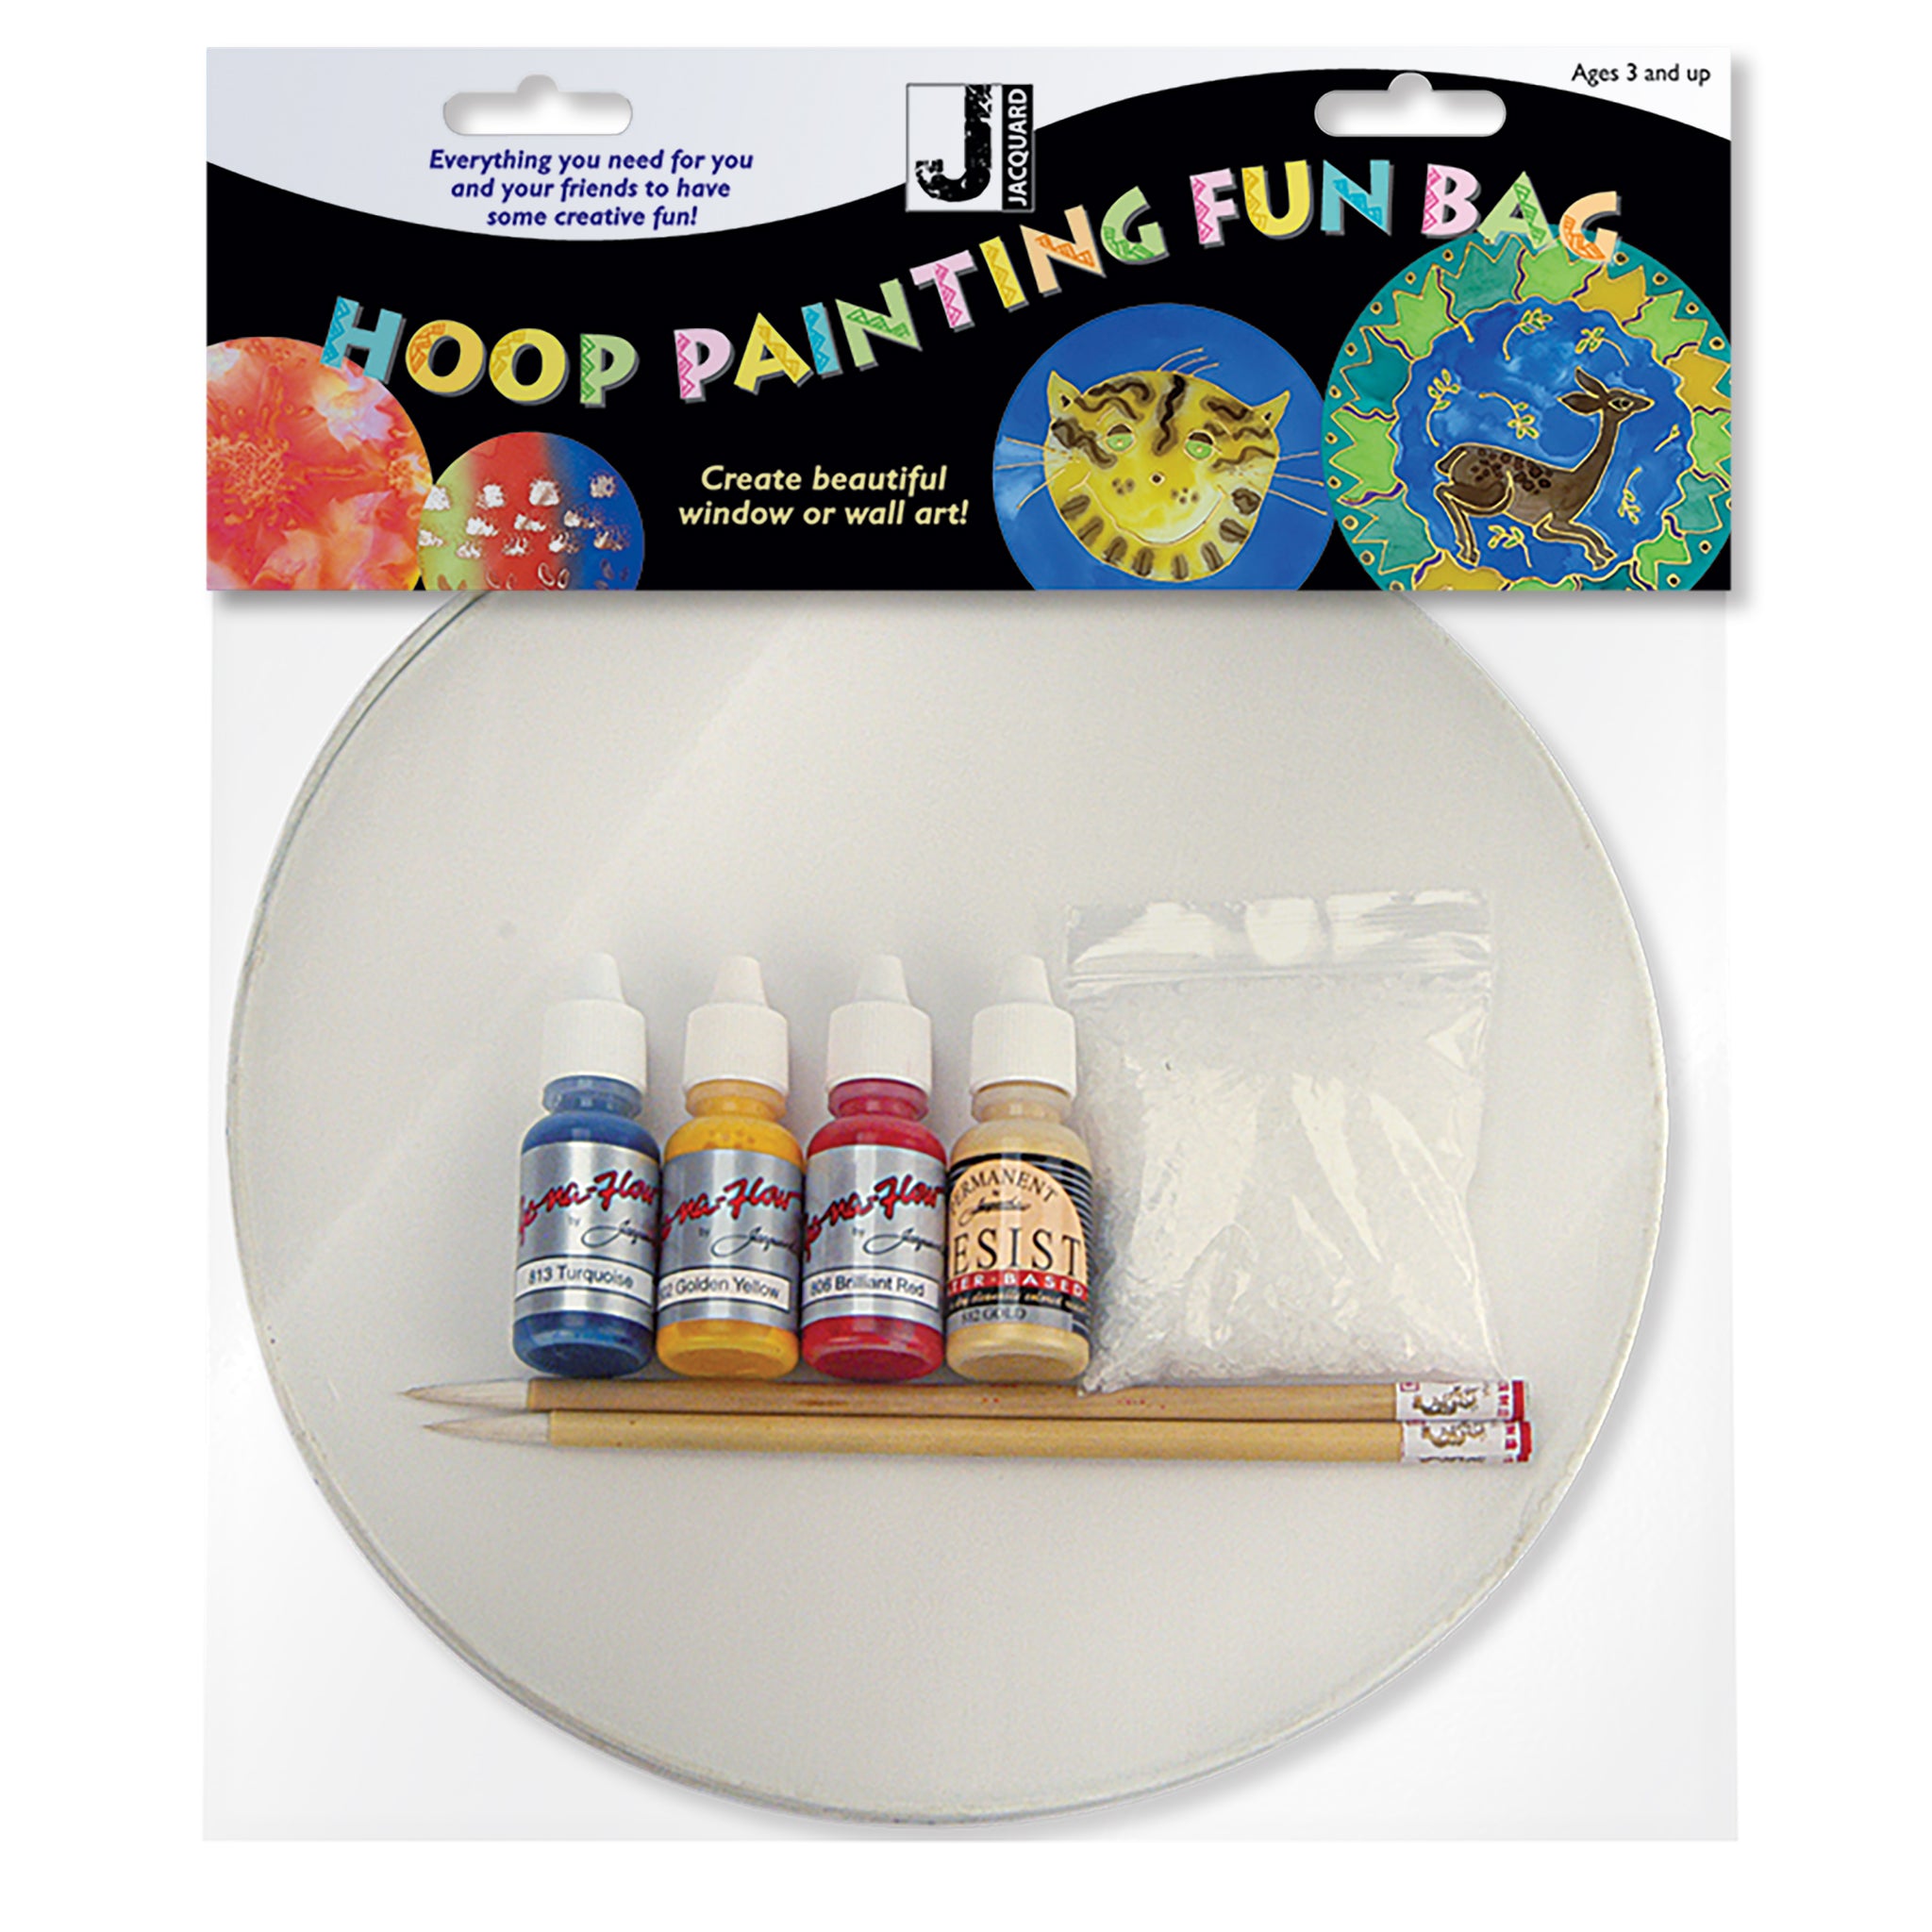 Hoop Painting Fun Bag